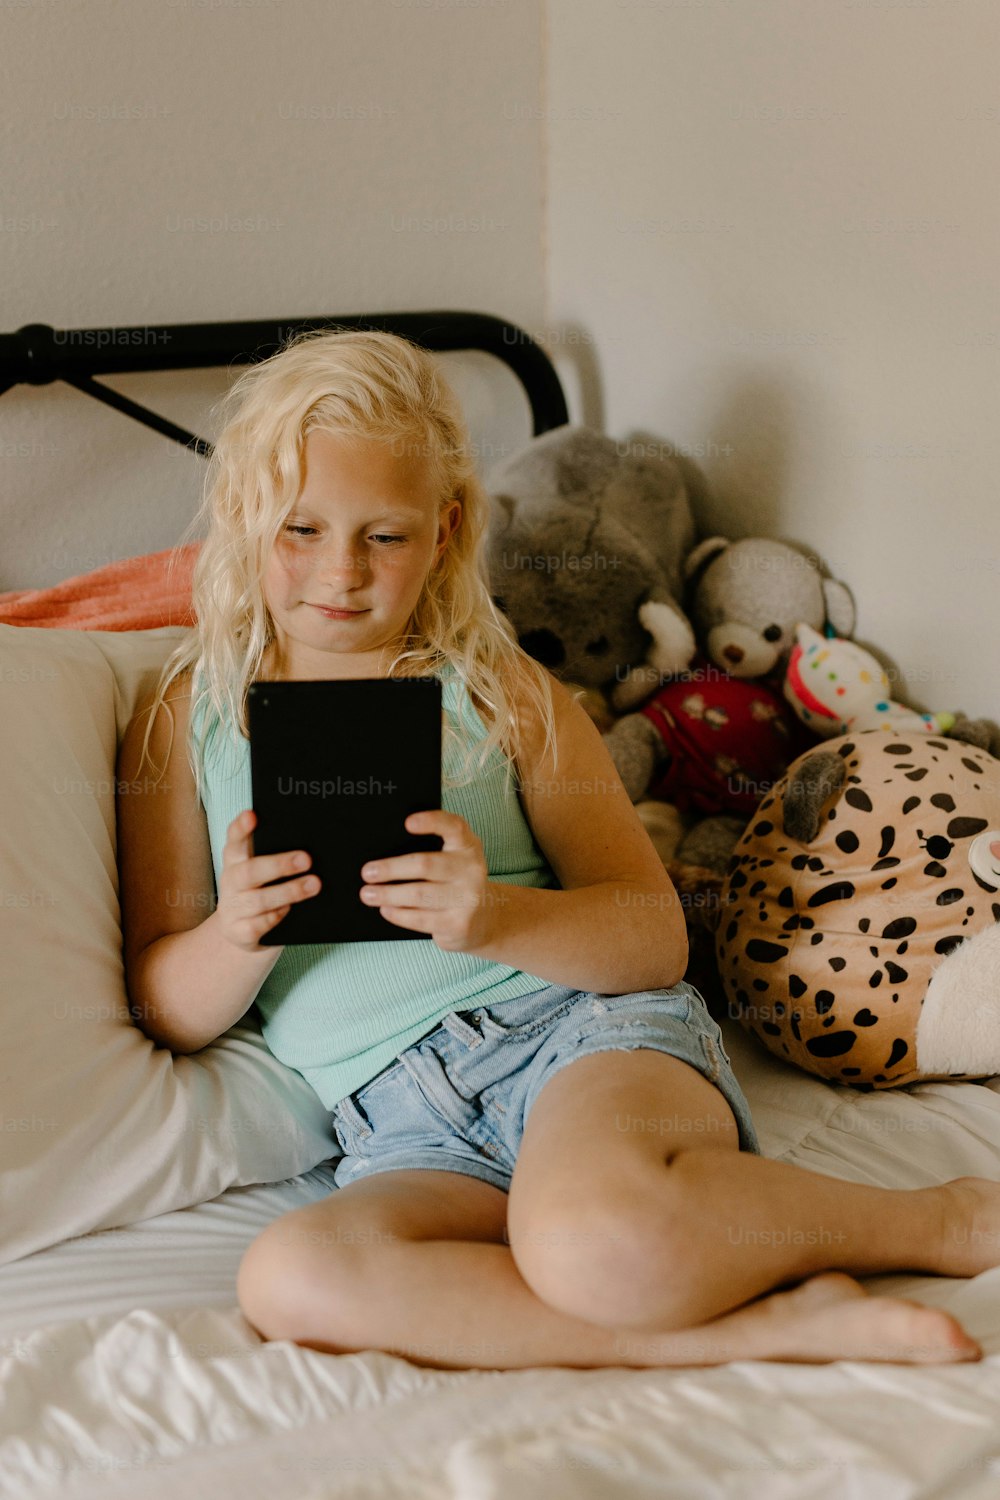 Ein kleines Mädchen, das auf einem Bett sitzt und ein Tablet hält